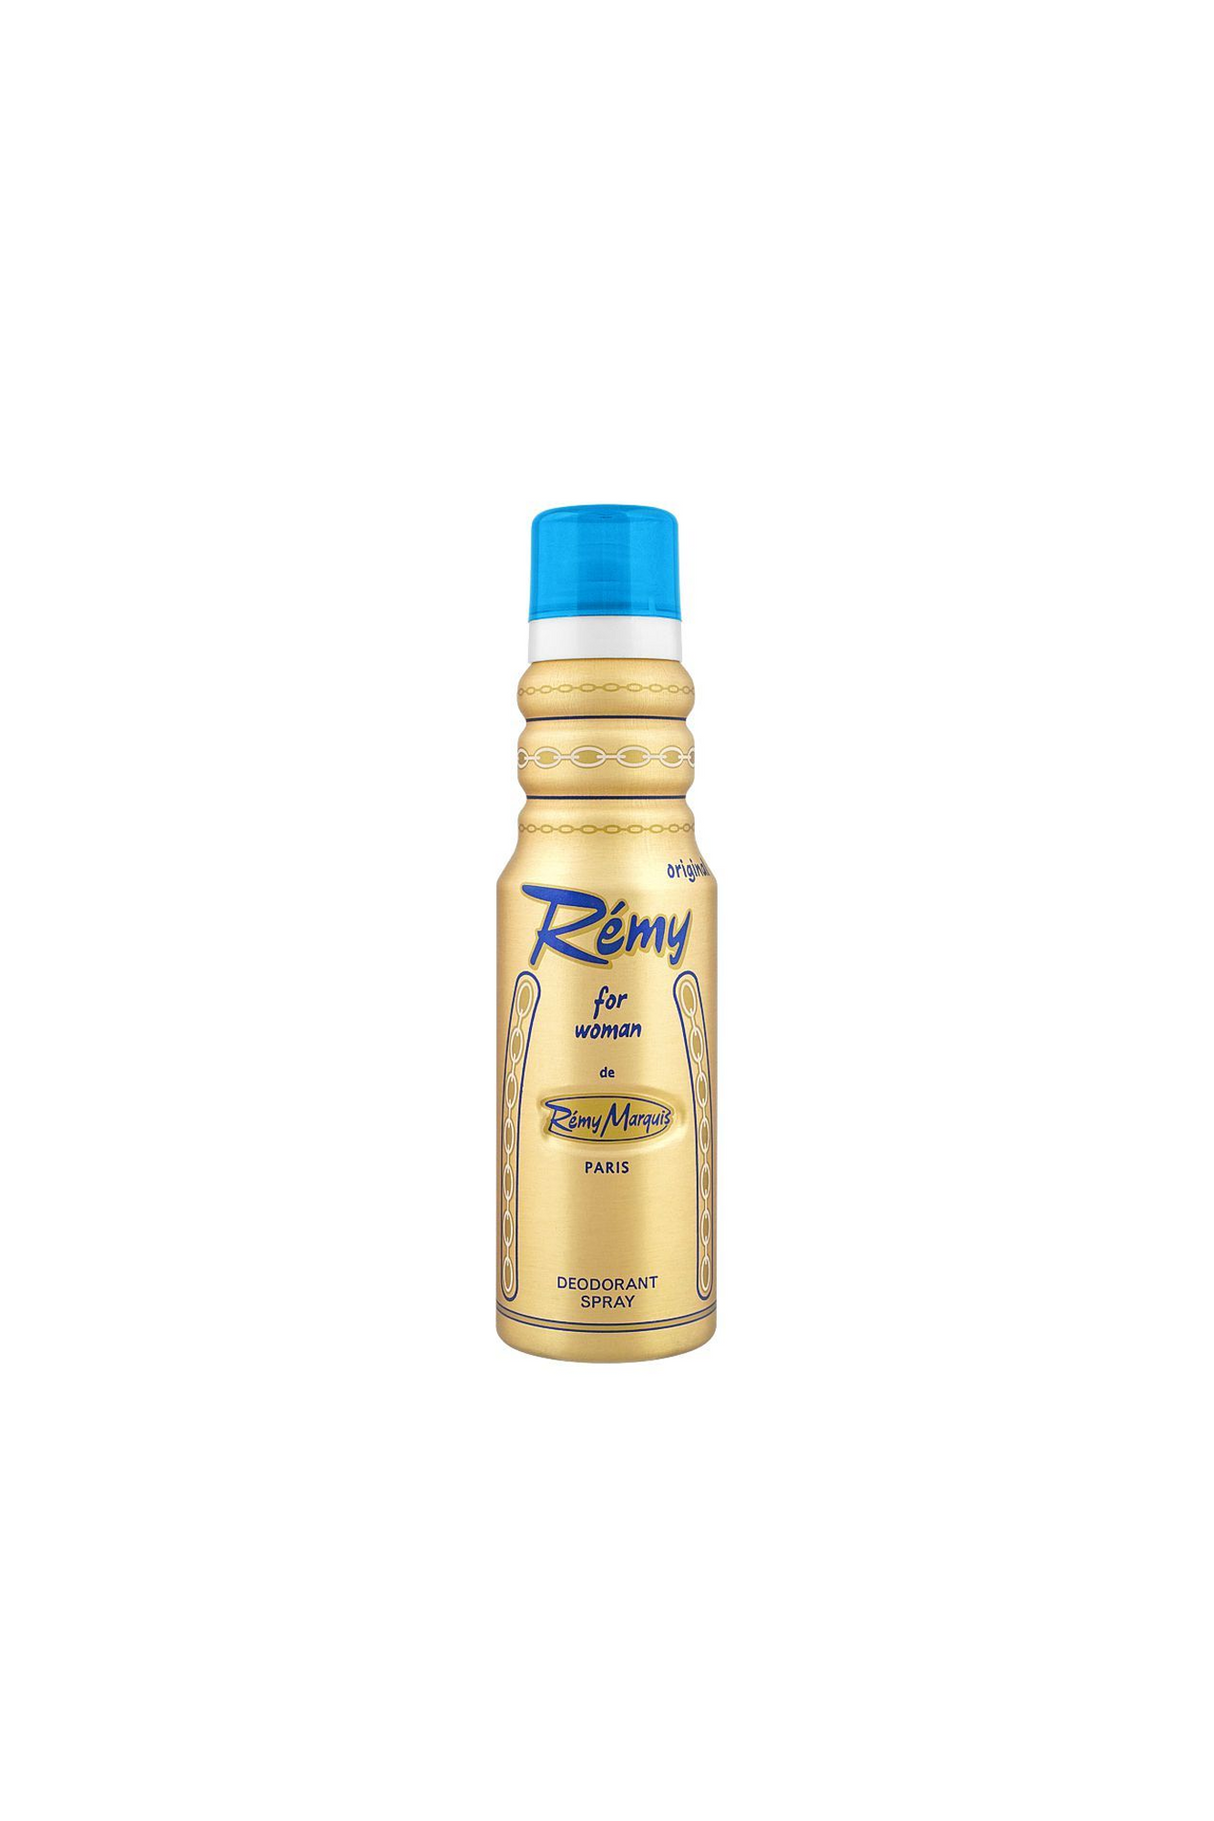 remy body spray woman 175ml